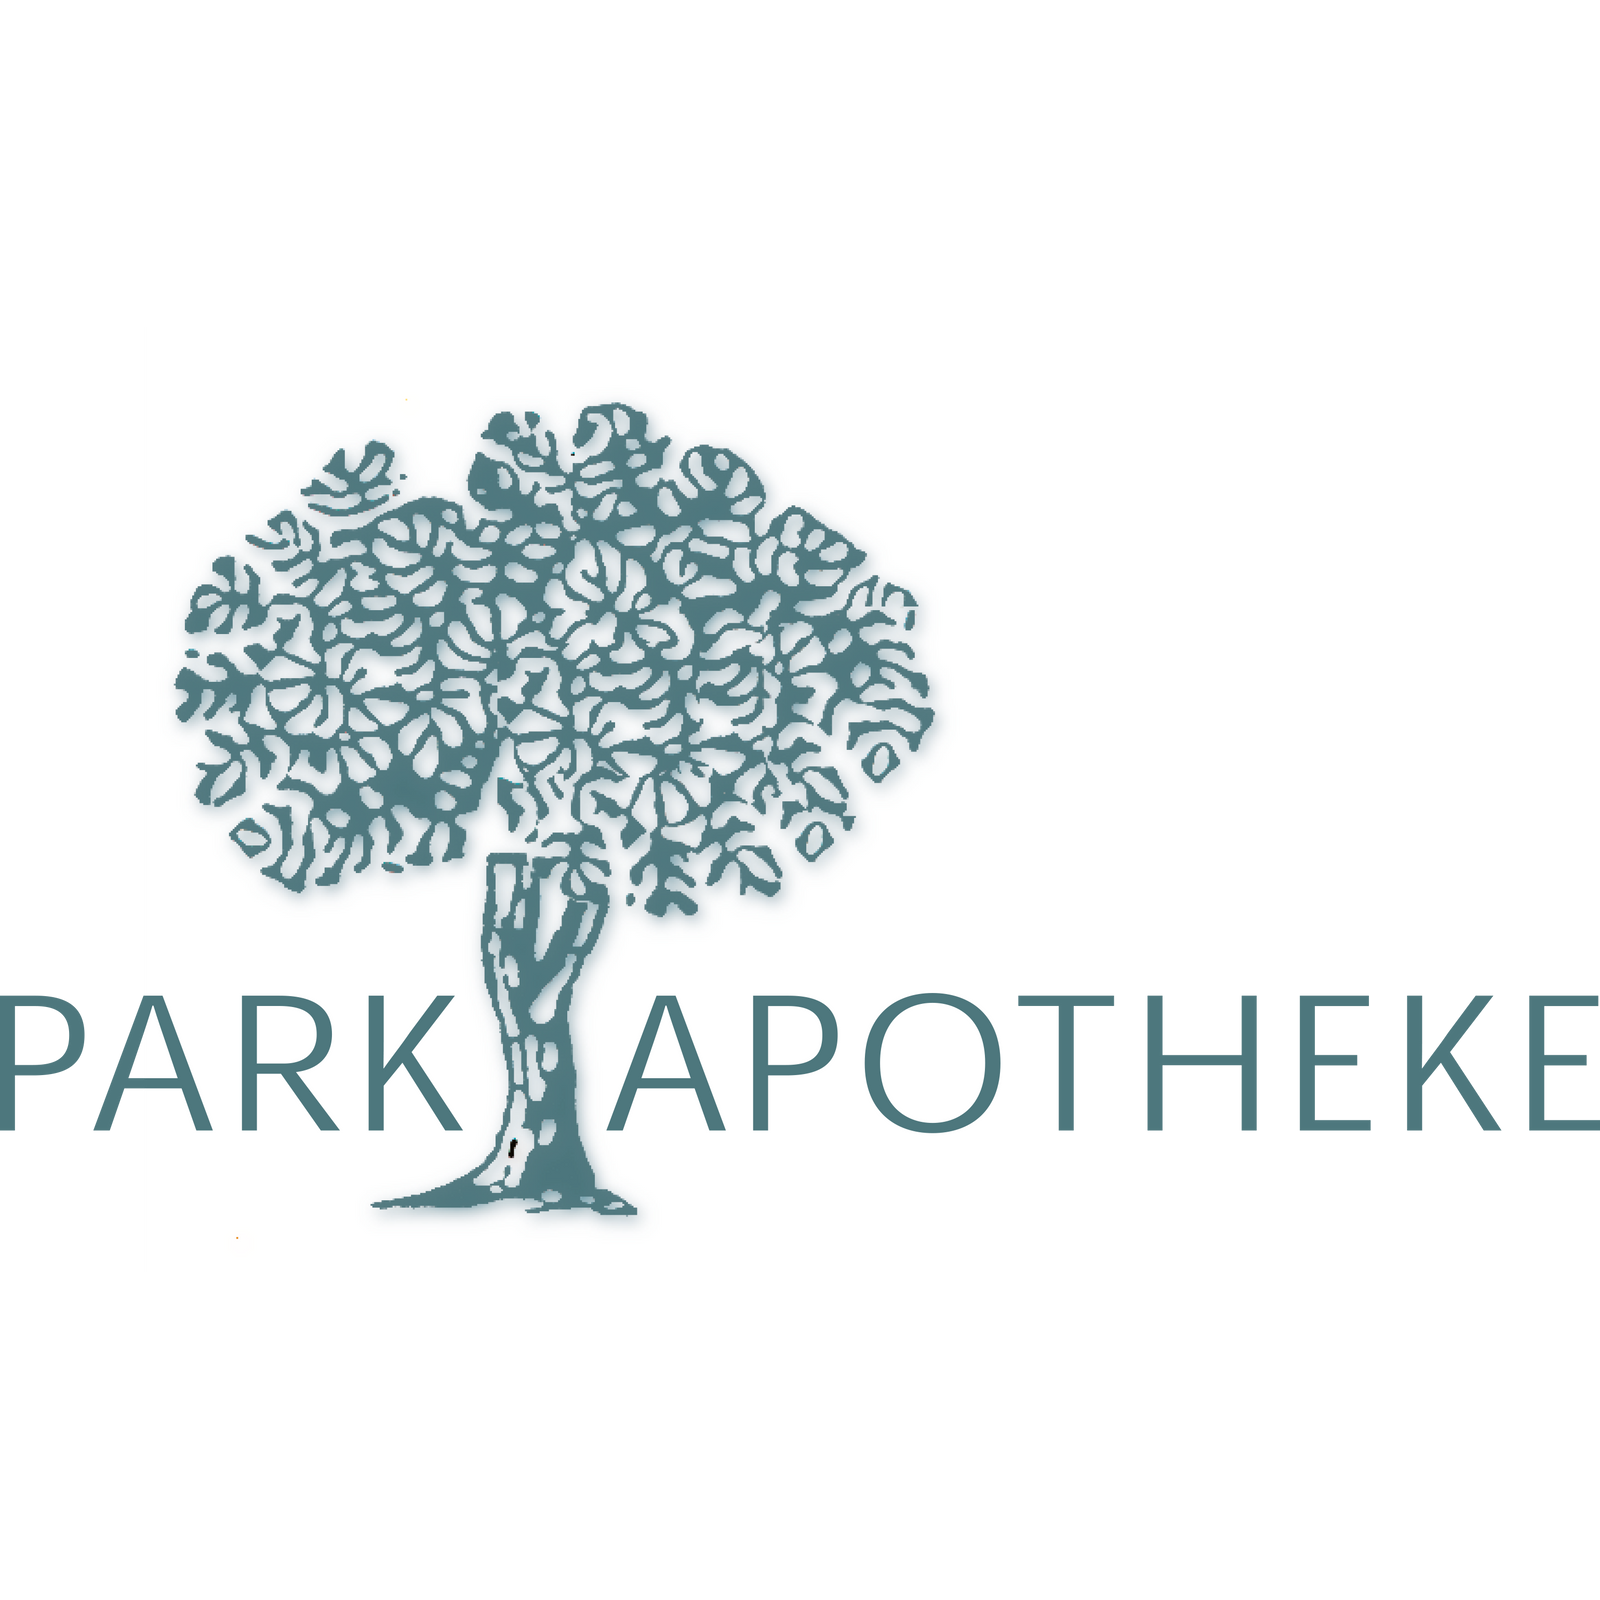 Park Apotheke  